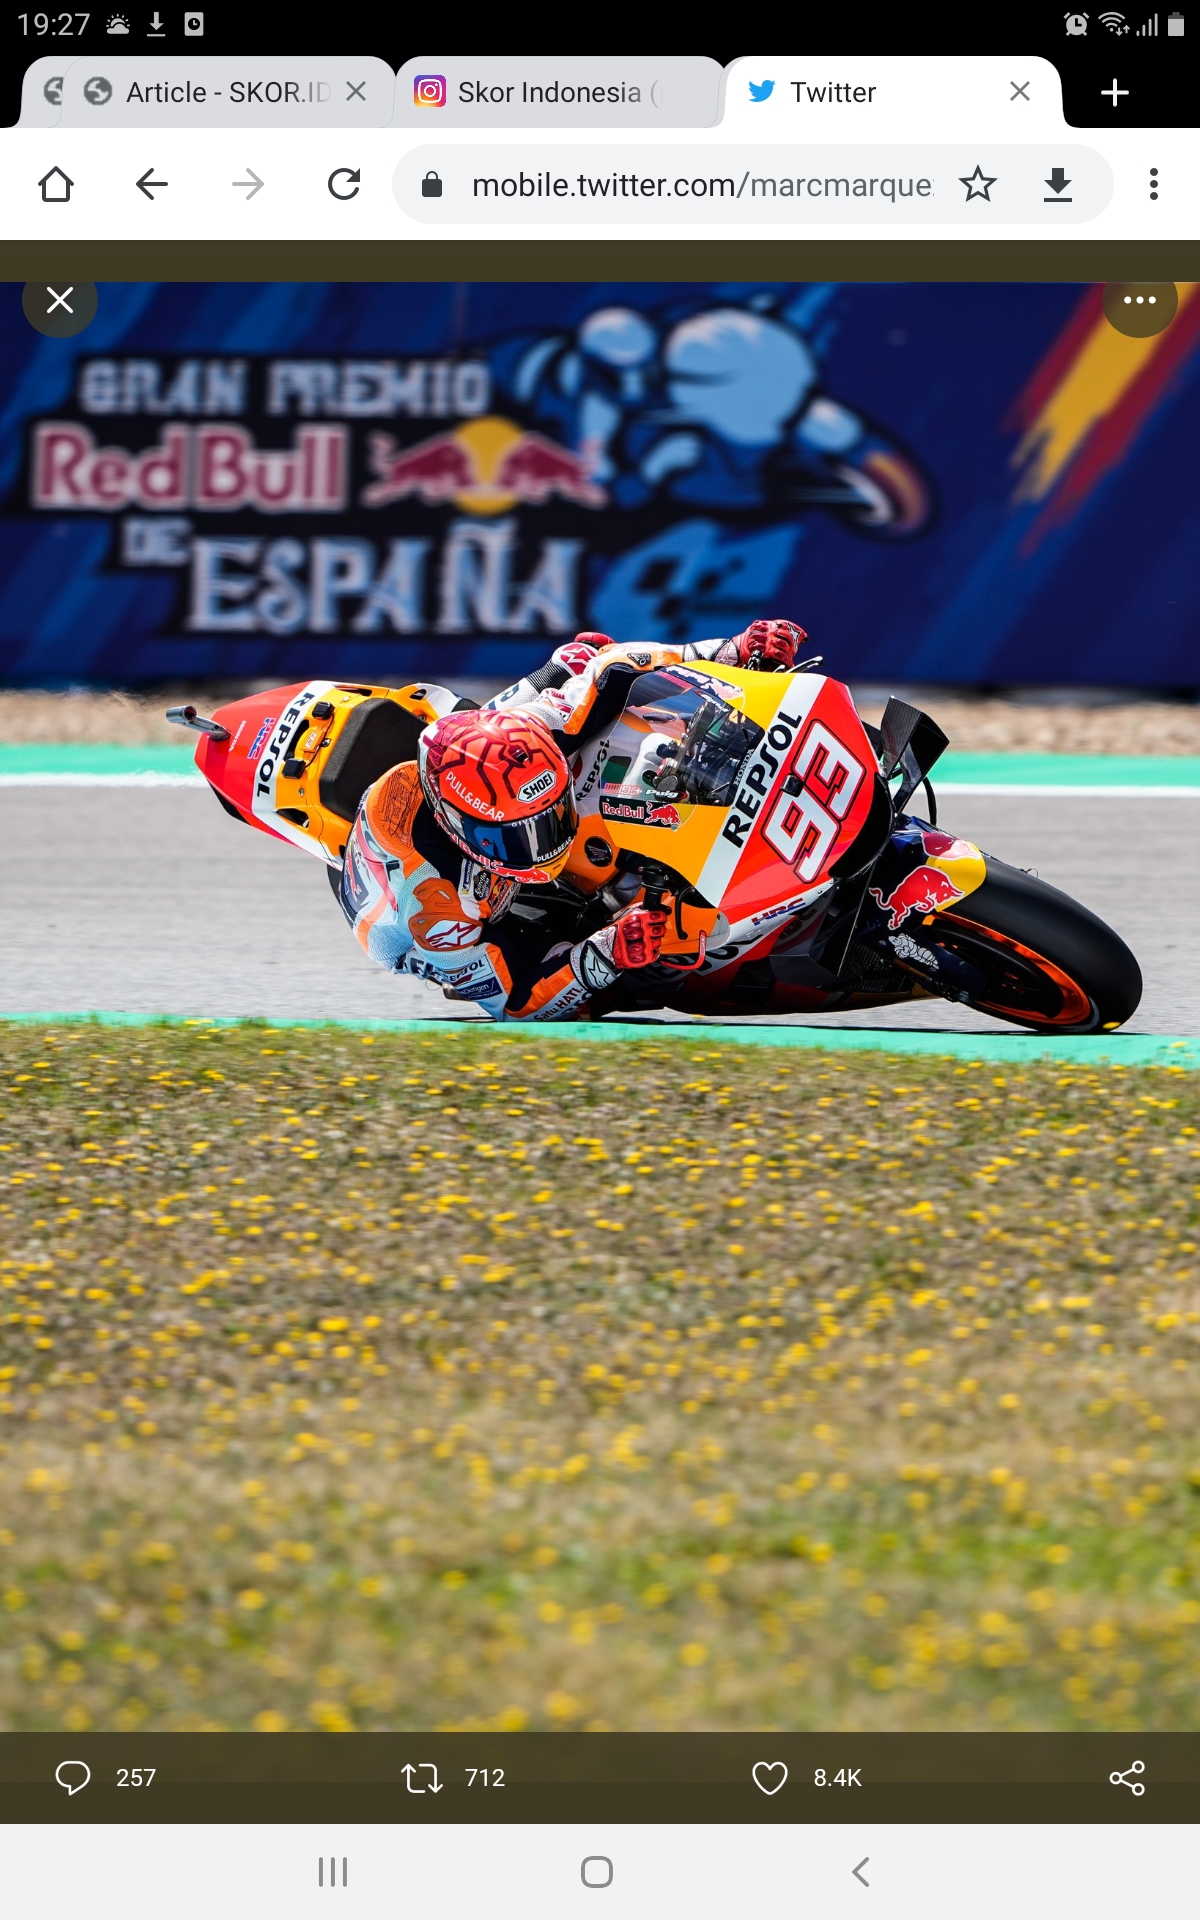 MotoGP Spanyol 2021: 8 Musim, Nasib Marc Marquez Berubah Total di Lintasan Jerez